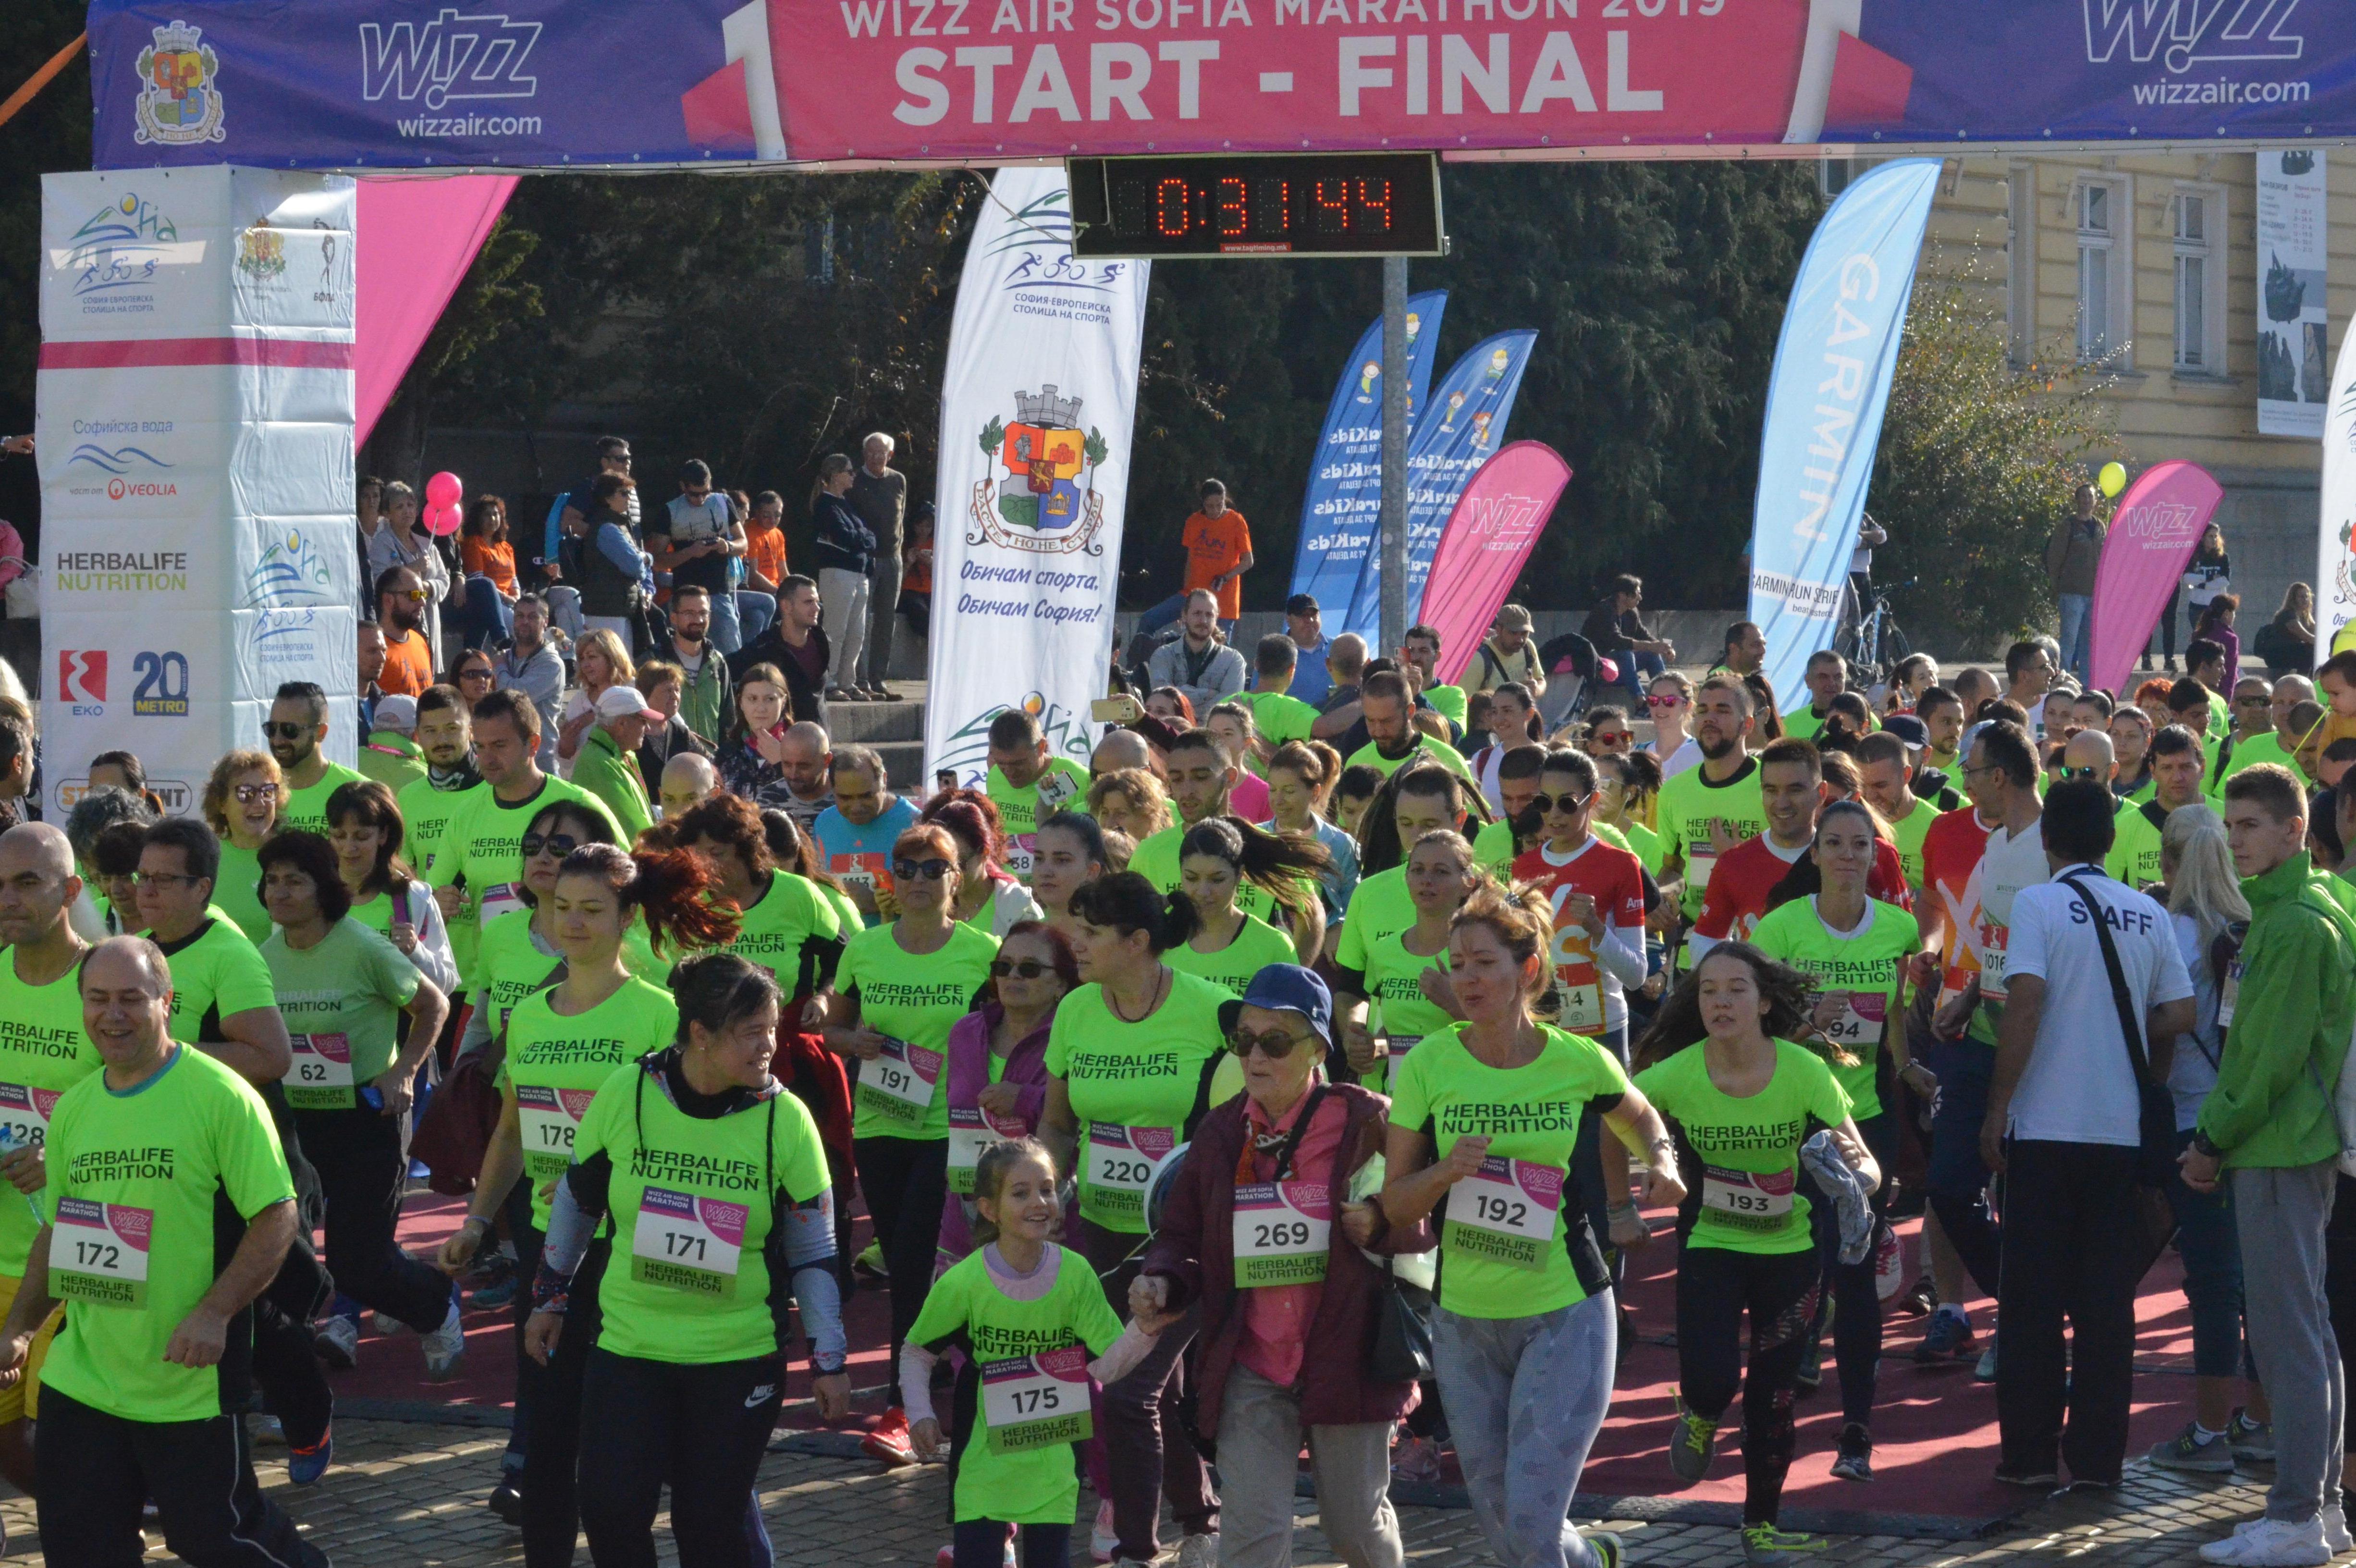 От Wizz Air София маратон помагат за направата на спортна площадка за  деца